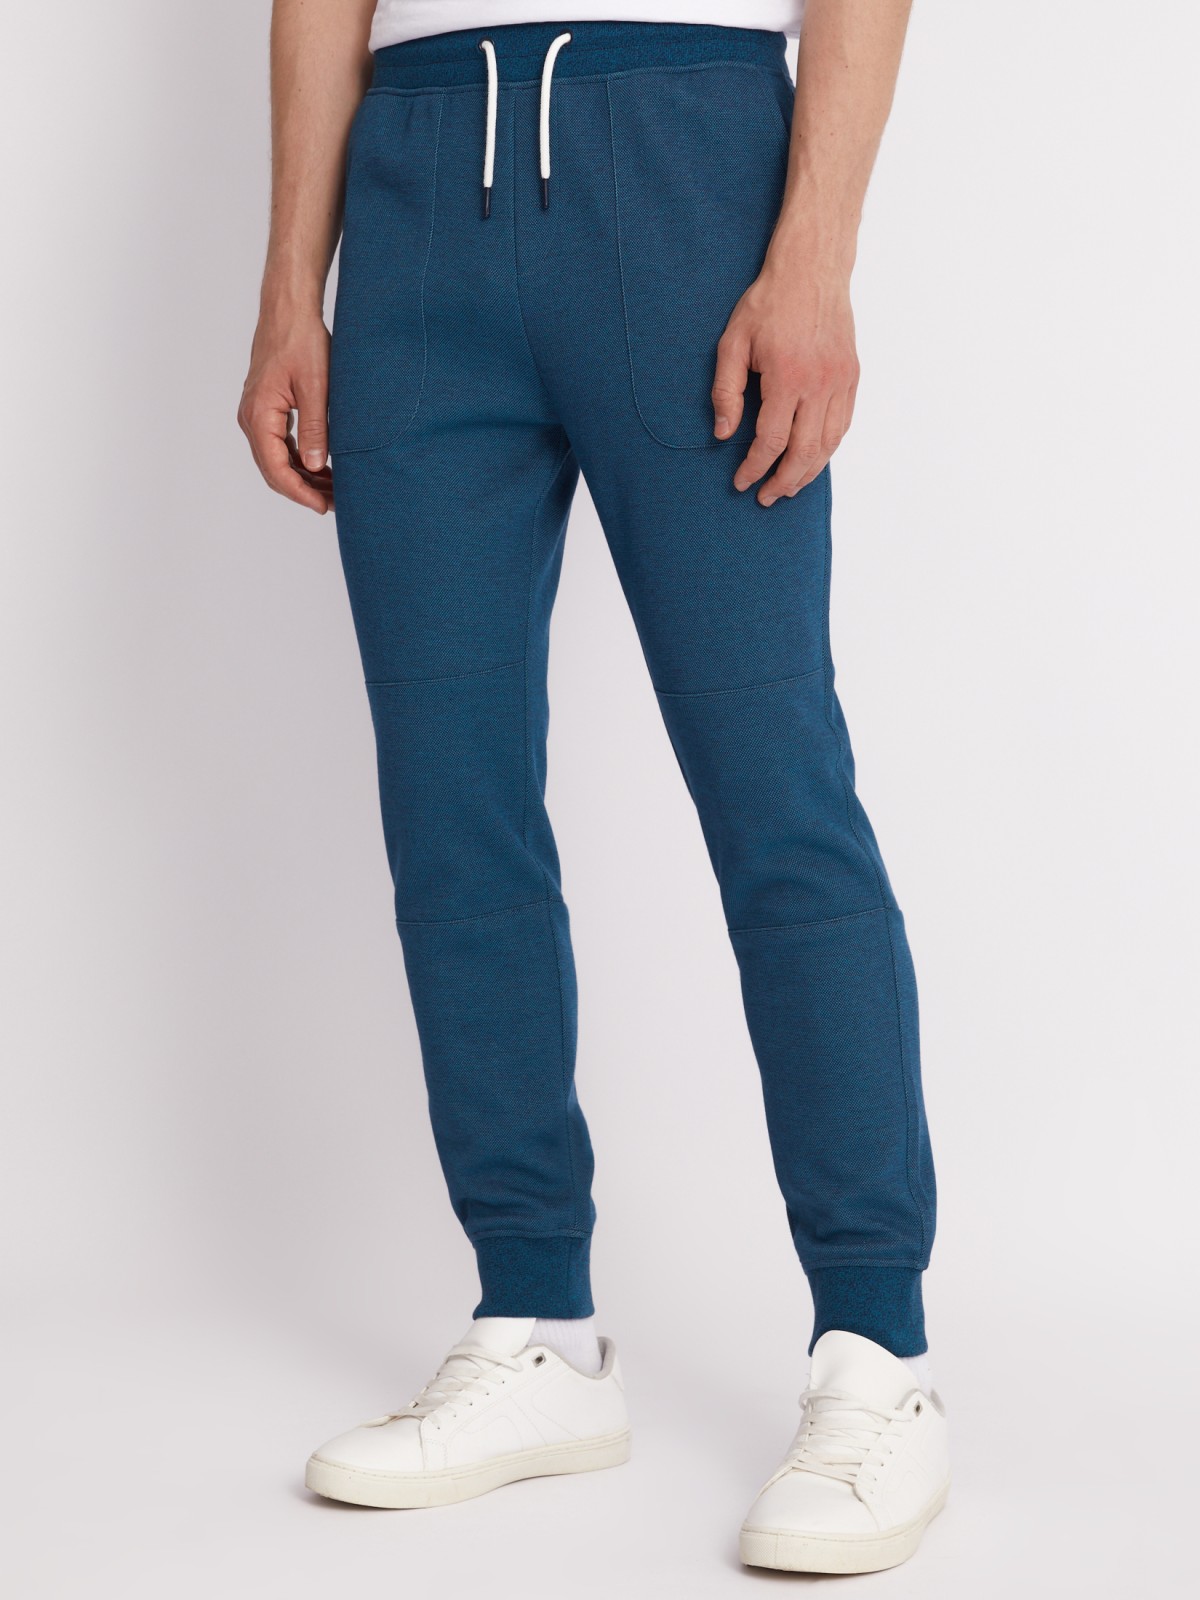 Трикотажные брюки-джоггеры в спортивном стиле zolla 213317604053, цвет бирюзовый, размер S - фото 4